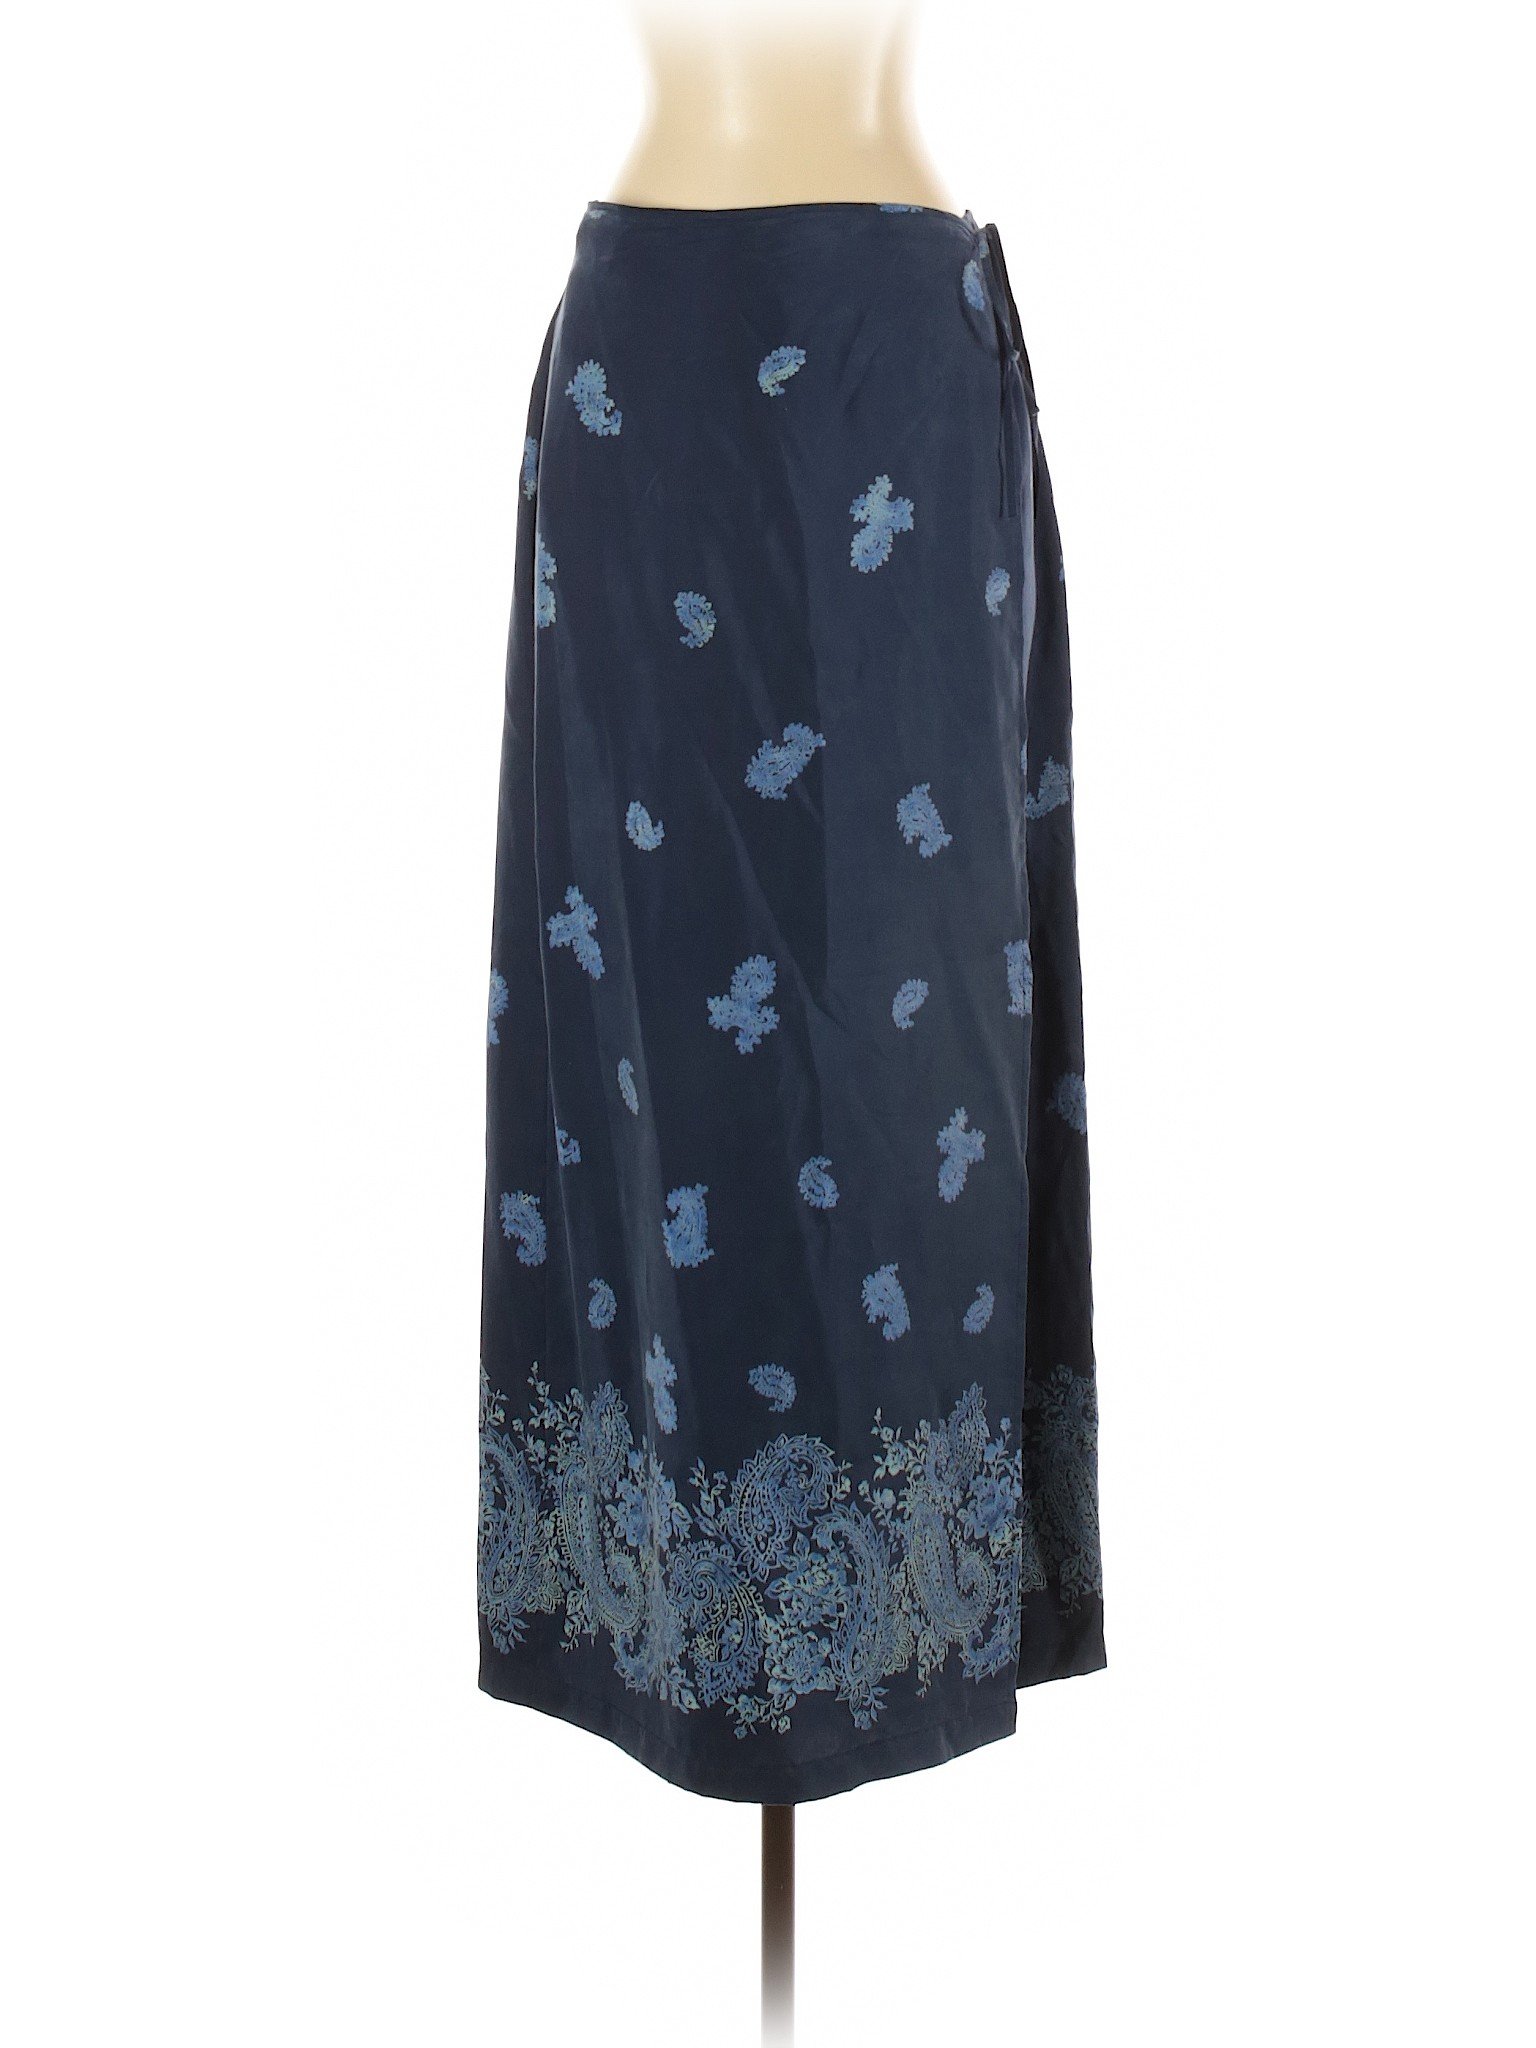 Express Women Blue Silk Skirt 5 | eBay